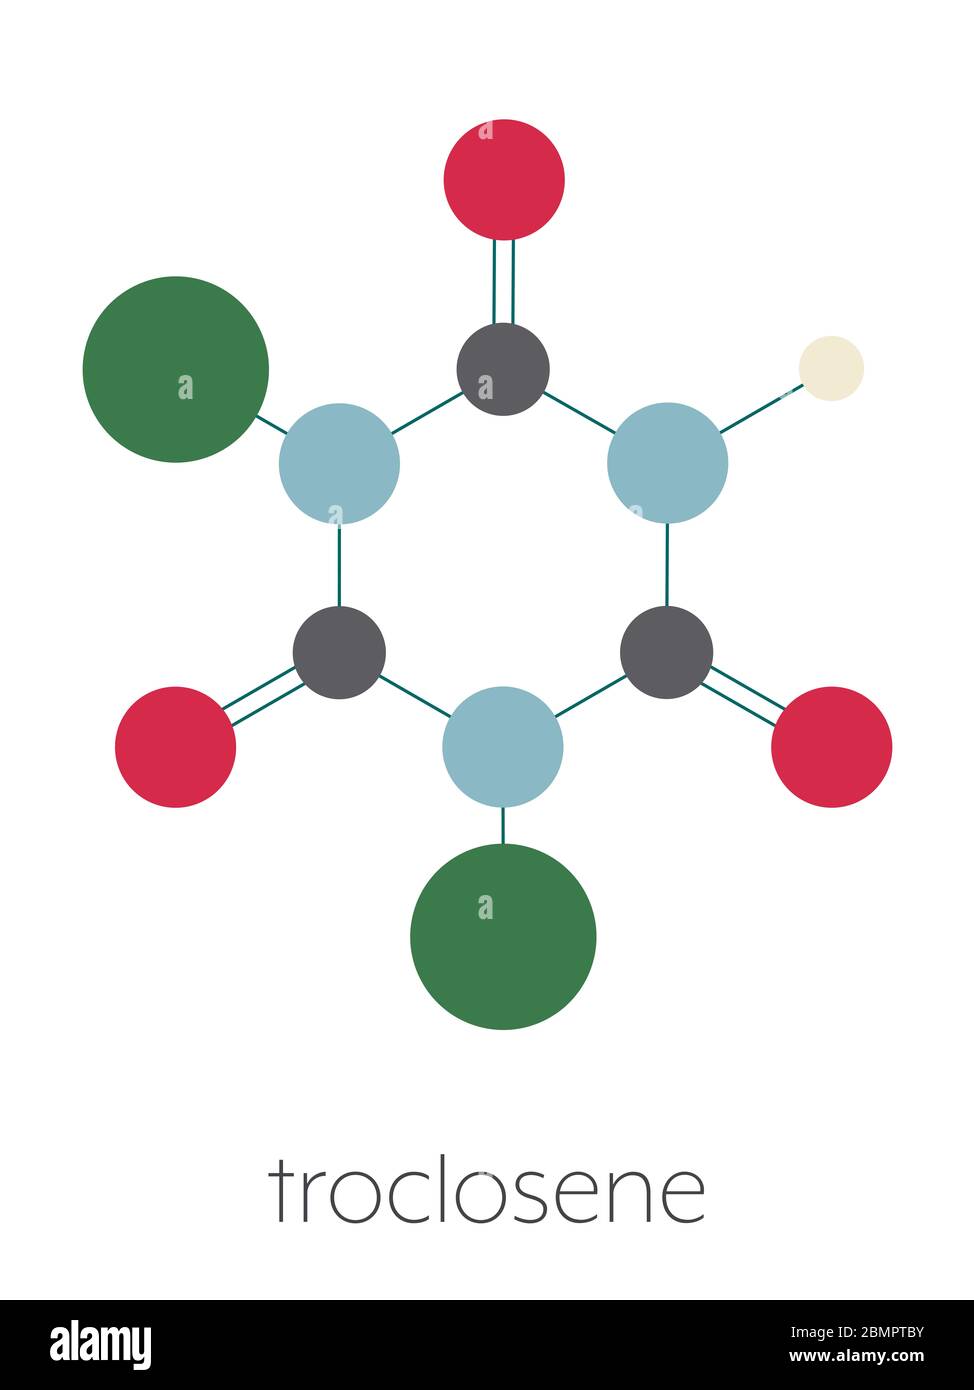 Molécule de troclosene (acide dichloroisocyanurique). Utilisé comme  désinfectant, déodorant, biocide, détergent et pour la purification de  l'eau. Formule squelettique stylisée (structure chimique) : les atomes sont  représentés par des cercles de couleur :